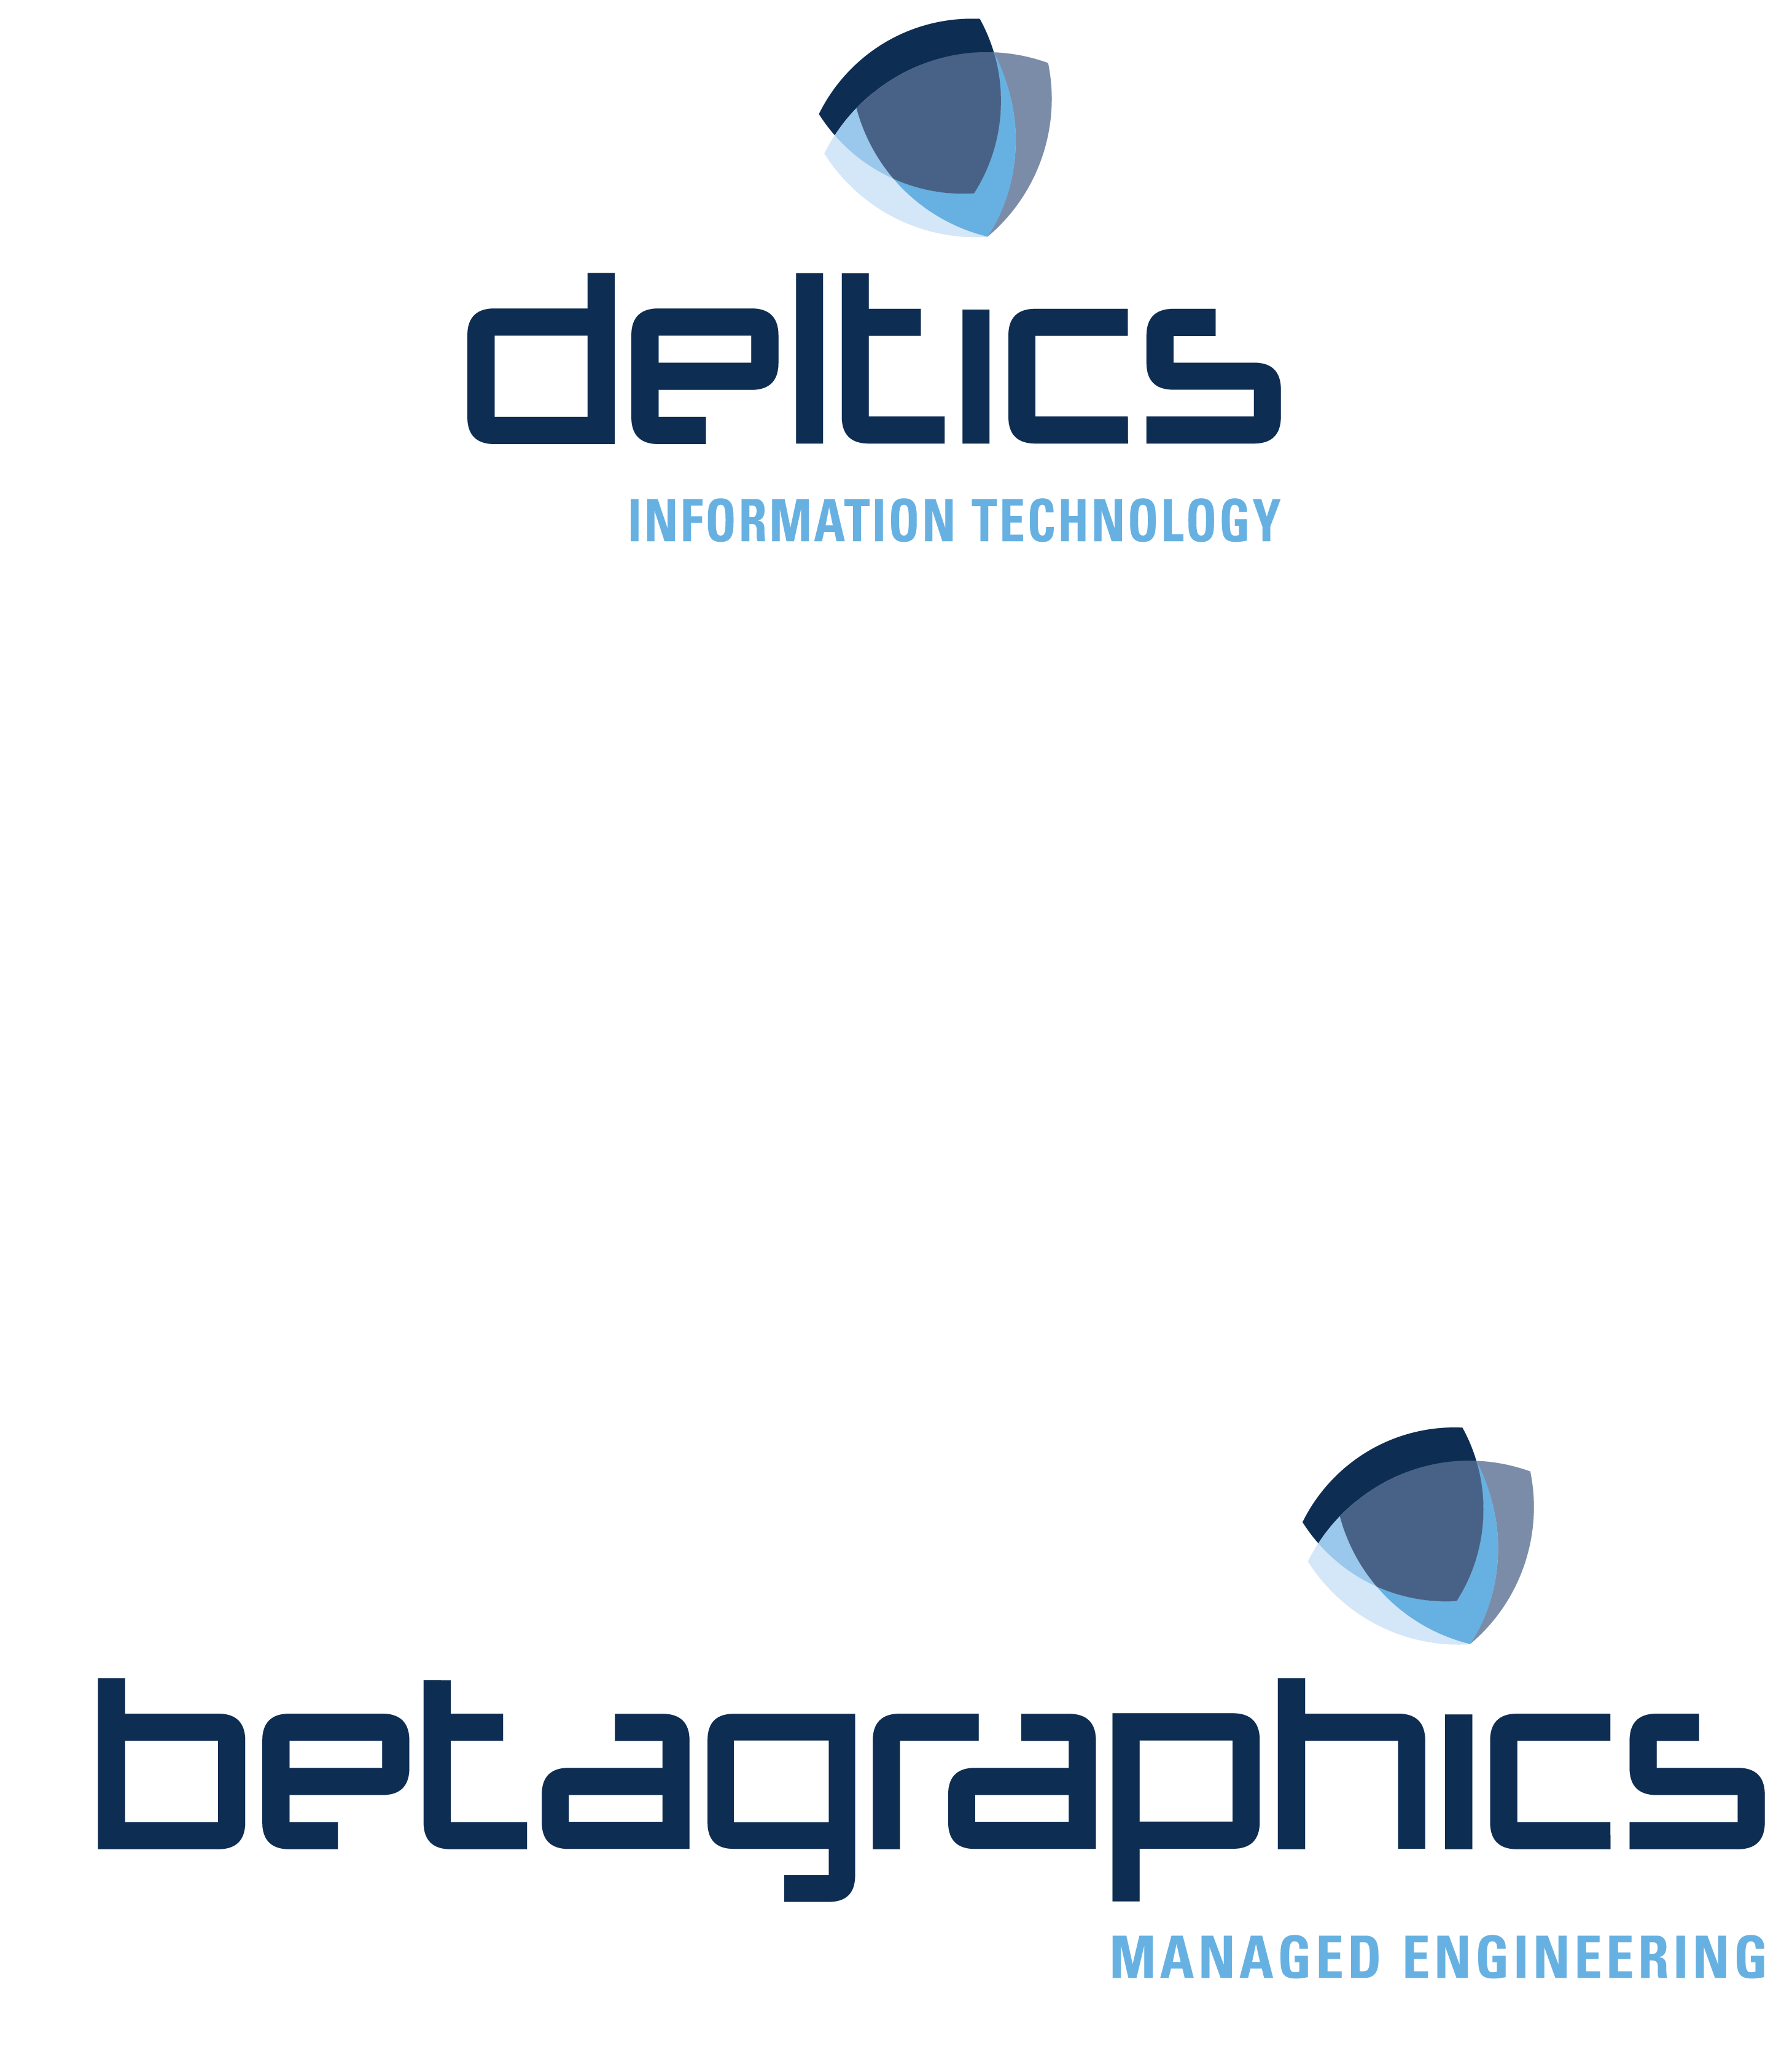 Deltics Beta logo A2